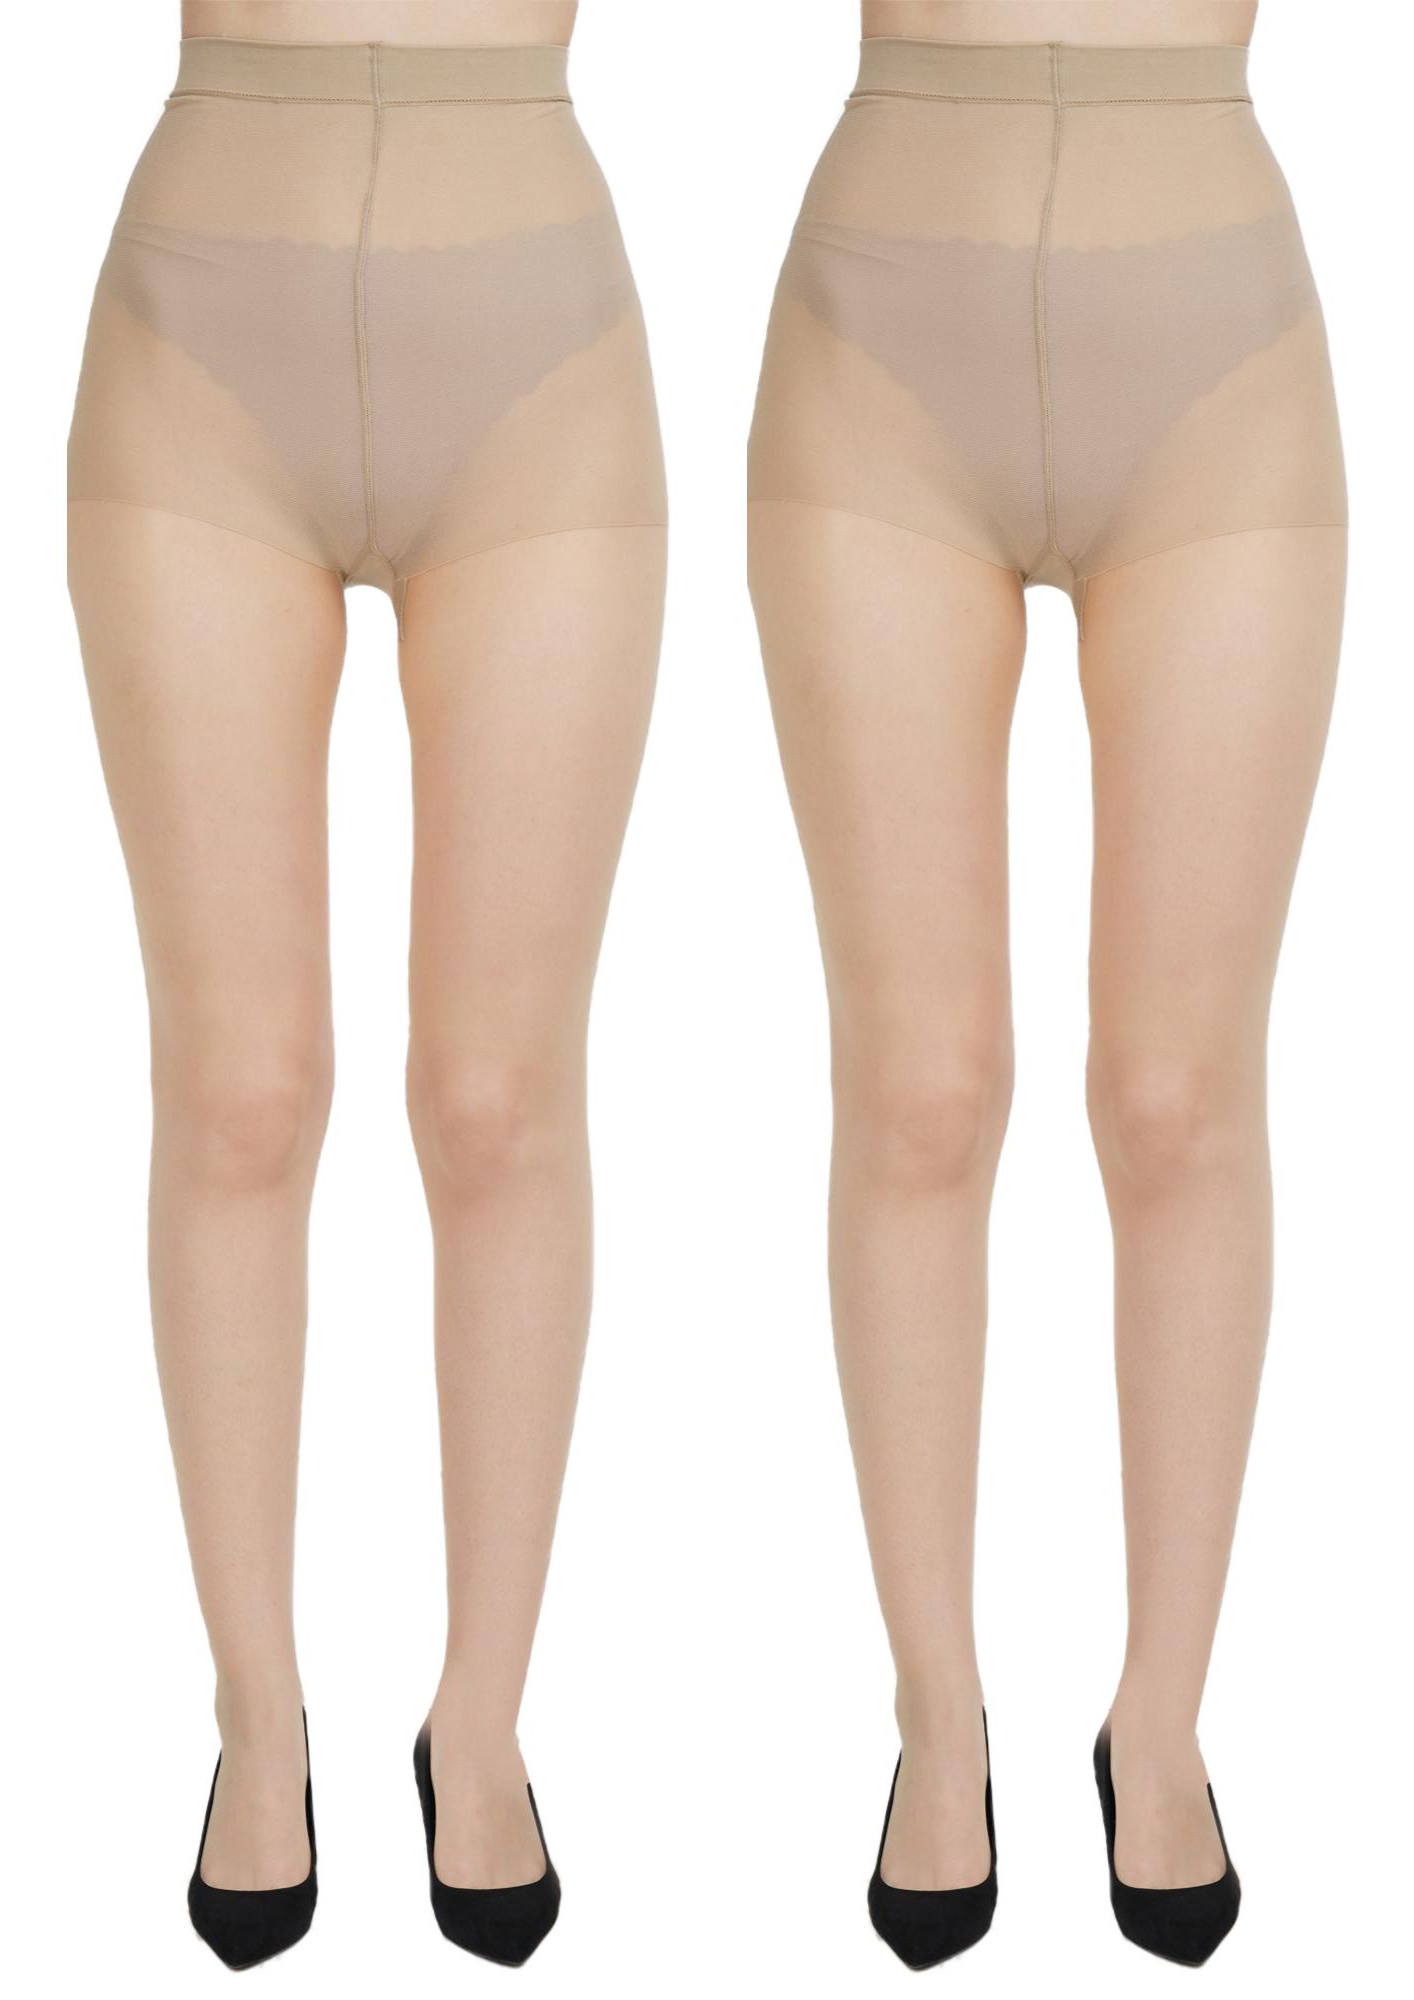 Buy NEXT2SKIN Women's Nylon Sheer Transparent Pantyhose Stockings